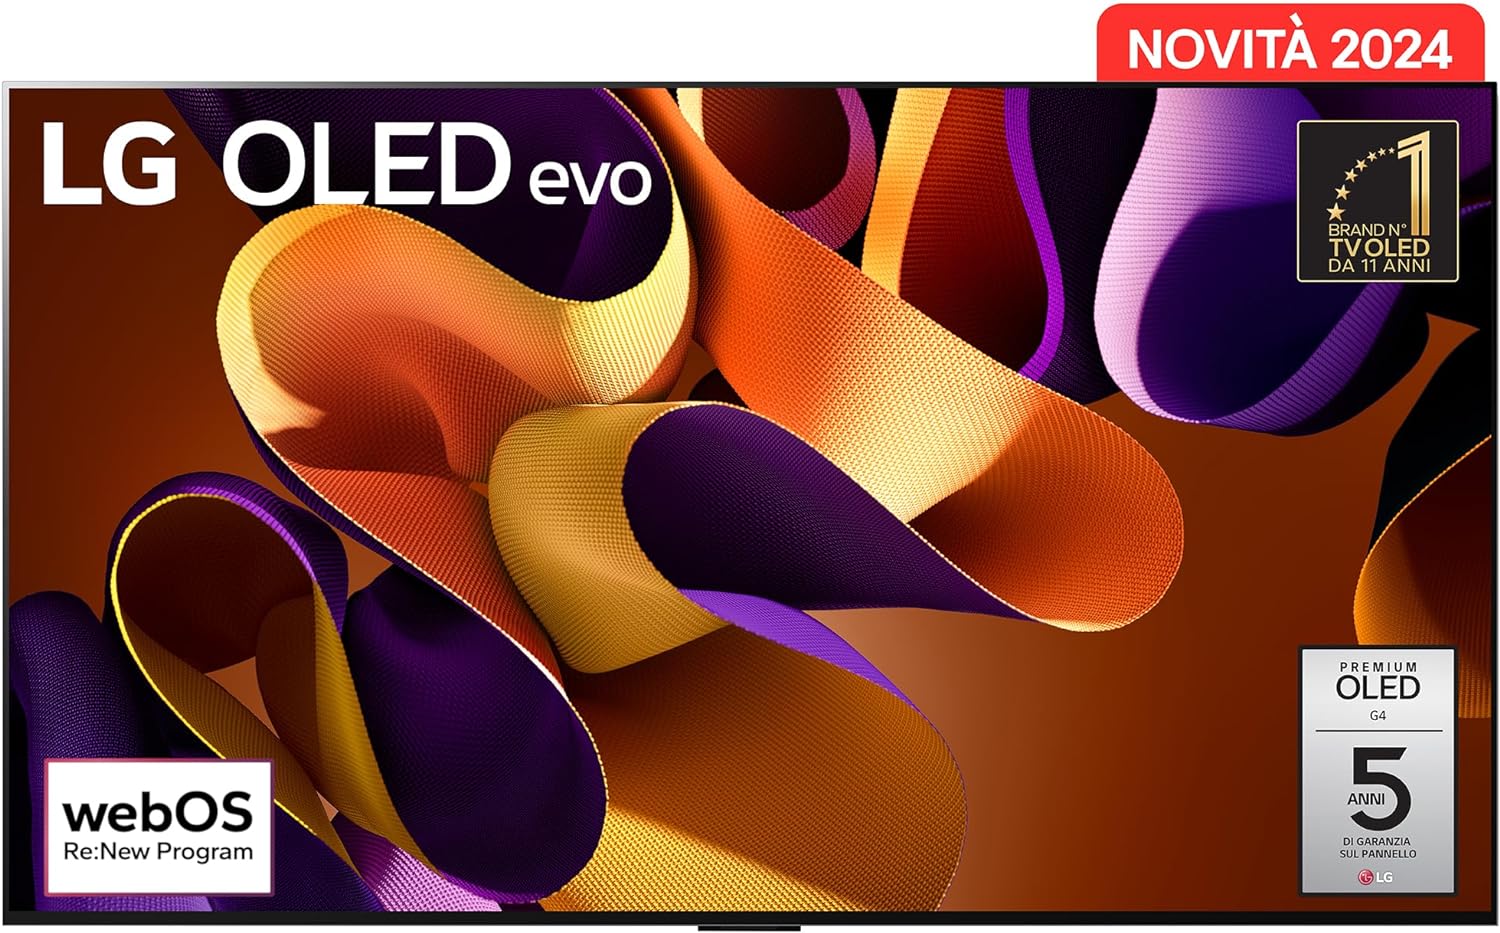 LG OLED Evo G4